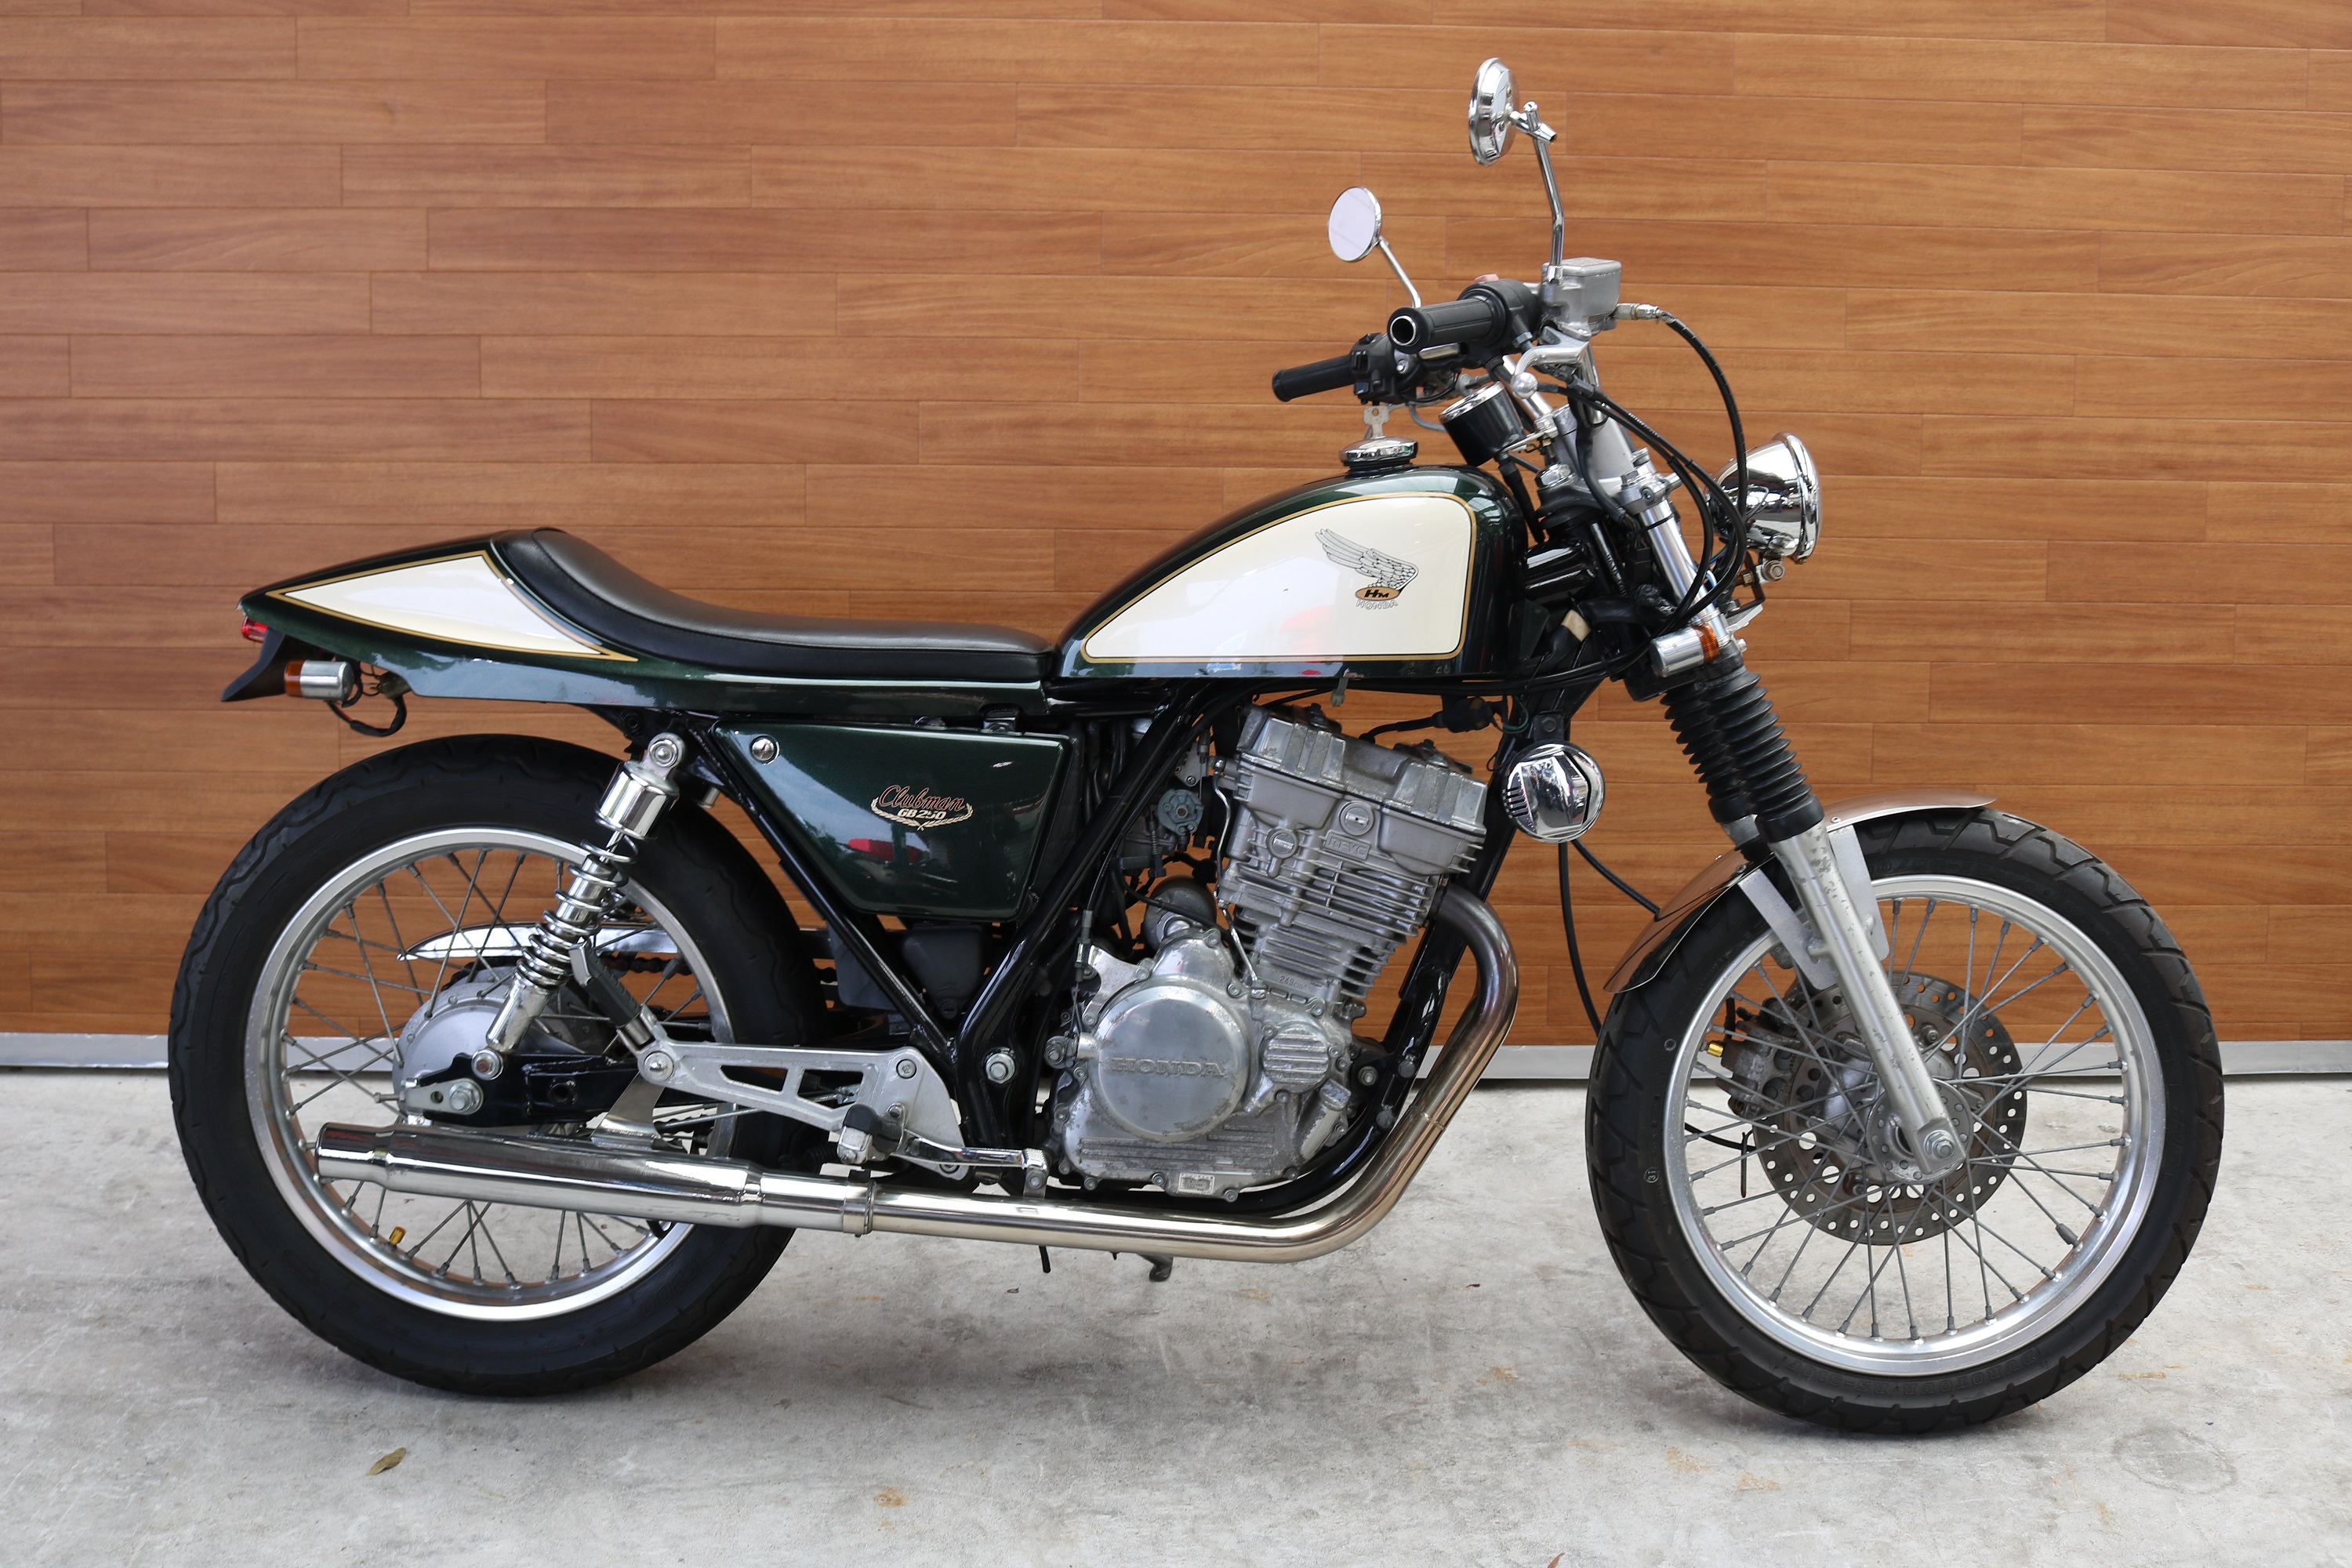 熊本中古車バイク情報 ホンダ Gb250 改 250 緑 熊本のバイクショップ アール バイクの新車 中古車 販売や買取 レンタルバイクのことならおまかせください